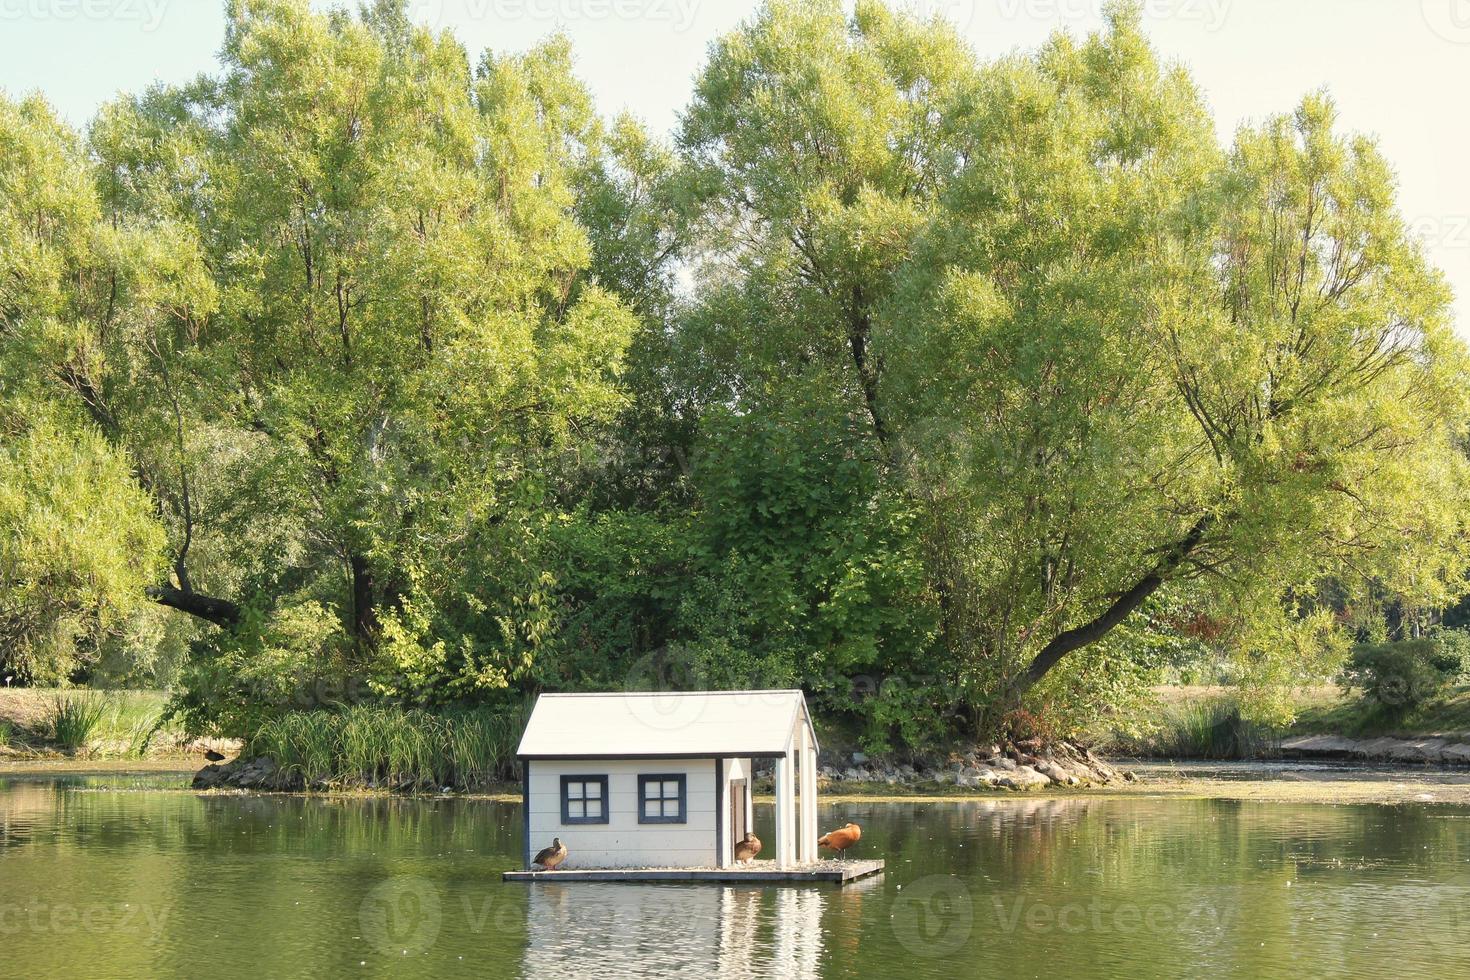 casa de pato flotante de madera blanca en el centro del estanque en un parque público. santuario de aves en lago artificial. nido de primavera. vista verde de verano. reserva natural de vida silvestre en el agua del río. refugio de aves acuáticas foto